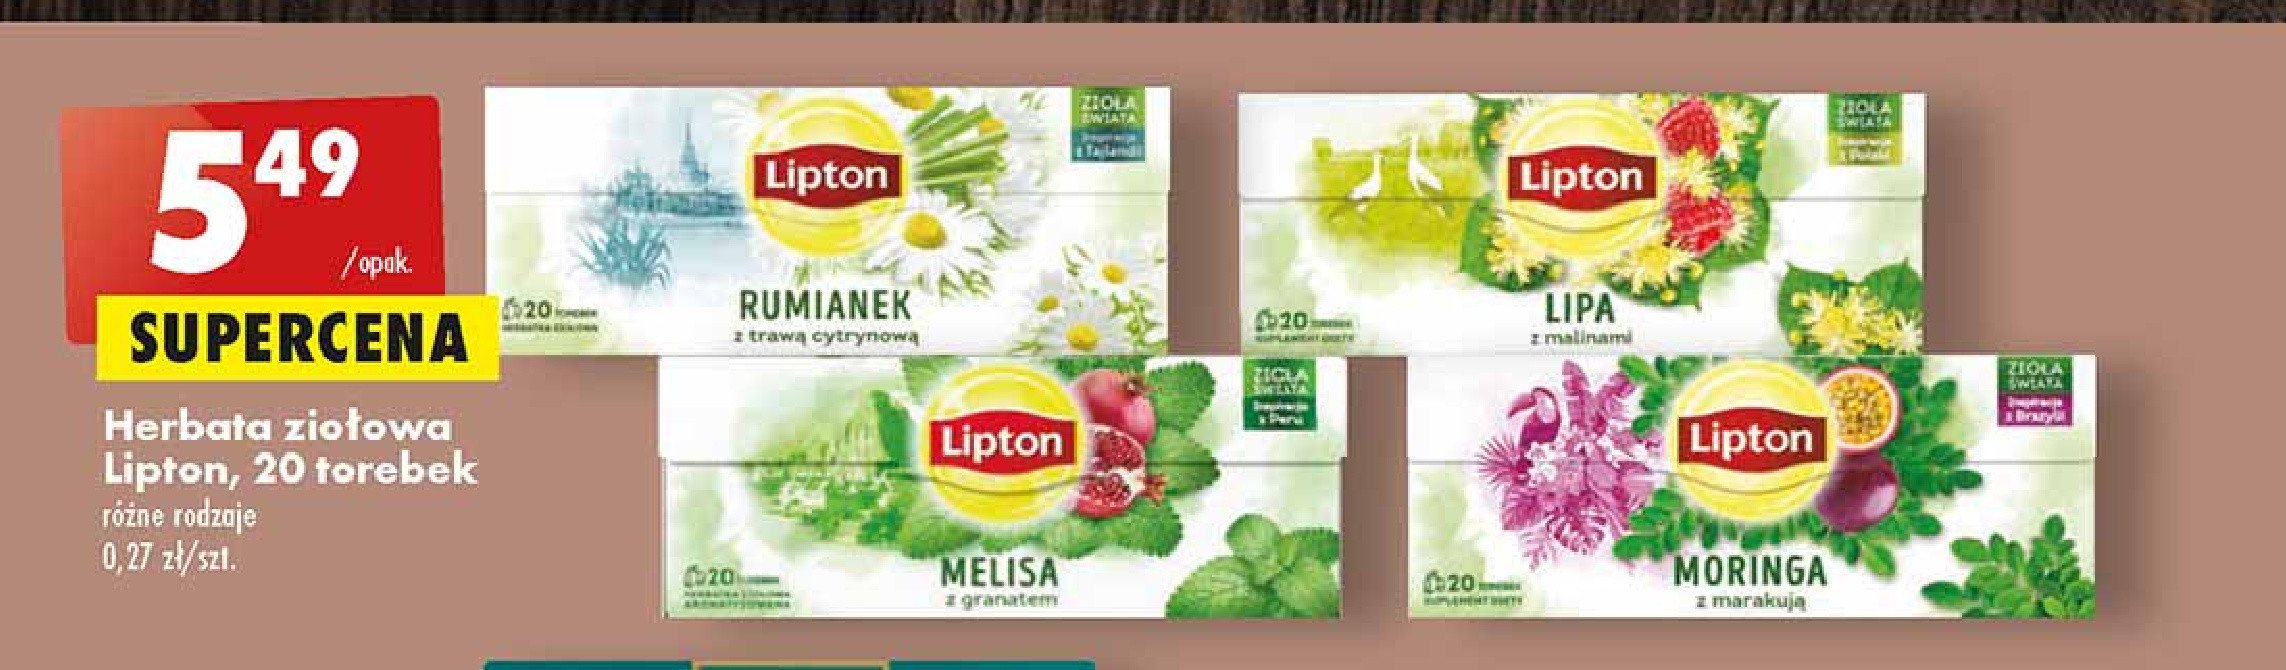 Herbatka melisa z granatem Lipton zioła świata promocja